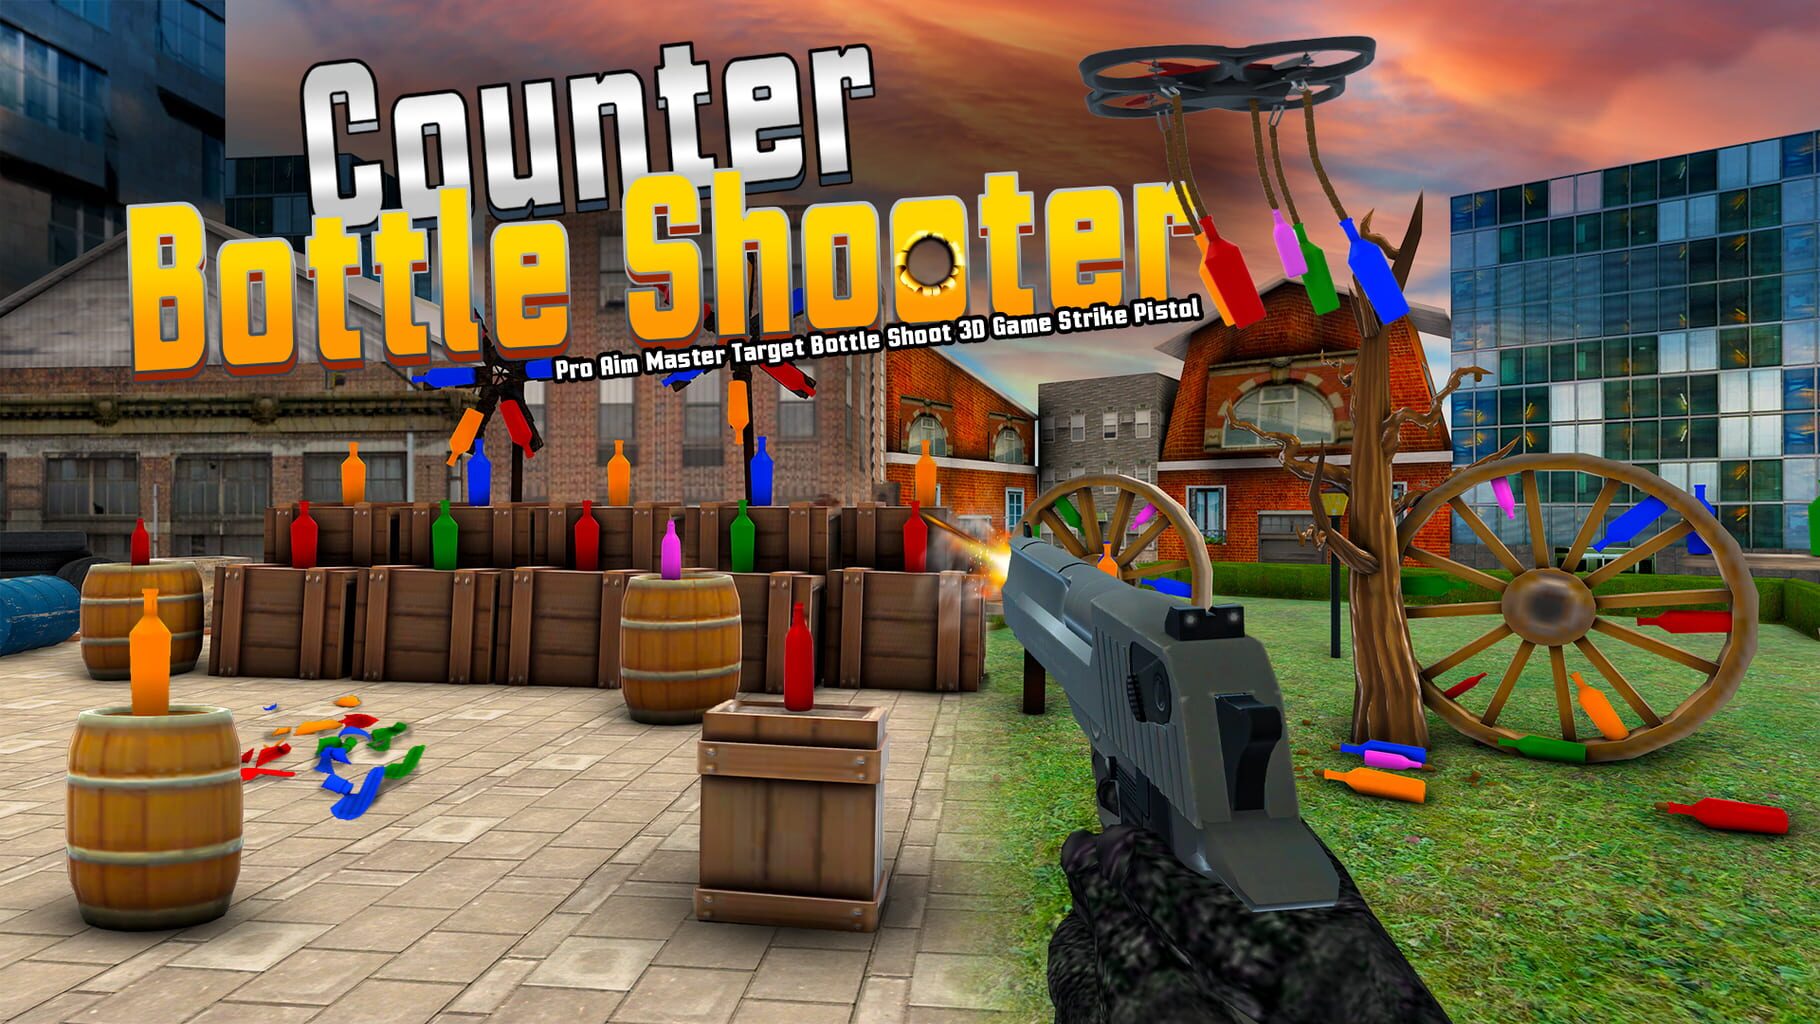 Counter Bottle Shooter: Pro Aim Master Target Bottle Shoot 3D Game Strike Pistol artwork